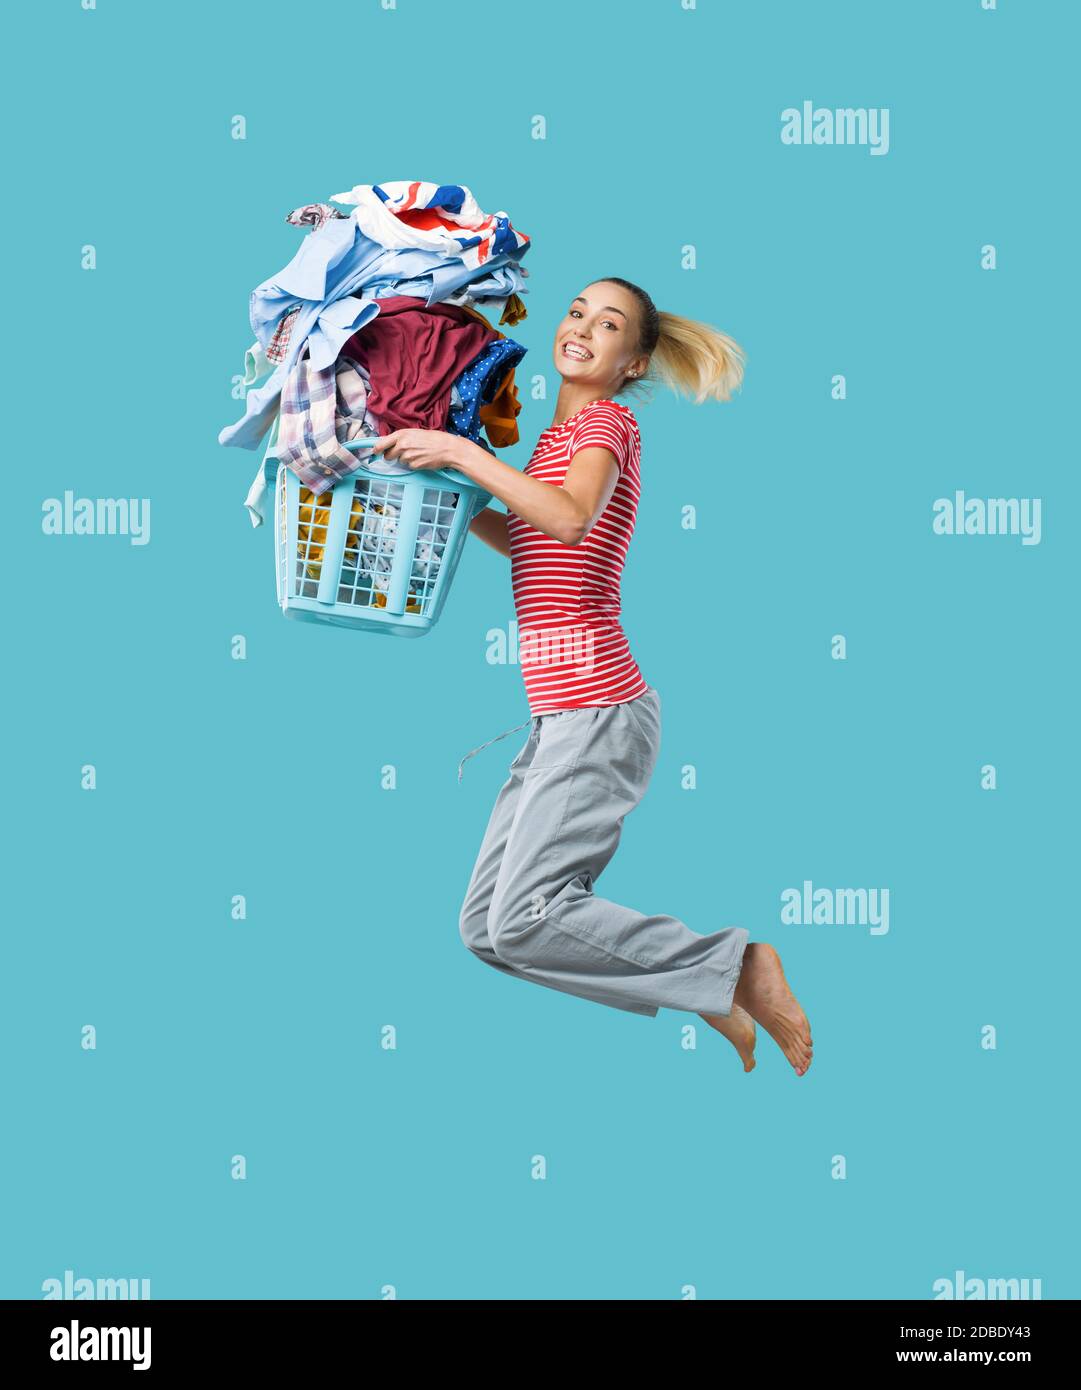 Feliz mujer alegre haciendo la colada y saltando, ella está sosteniendo una cesta de ropa llena de ropa Foto de stock